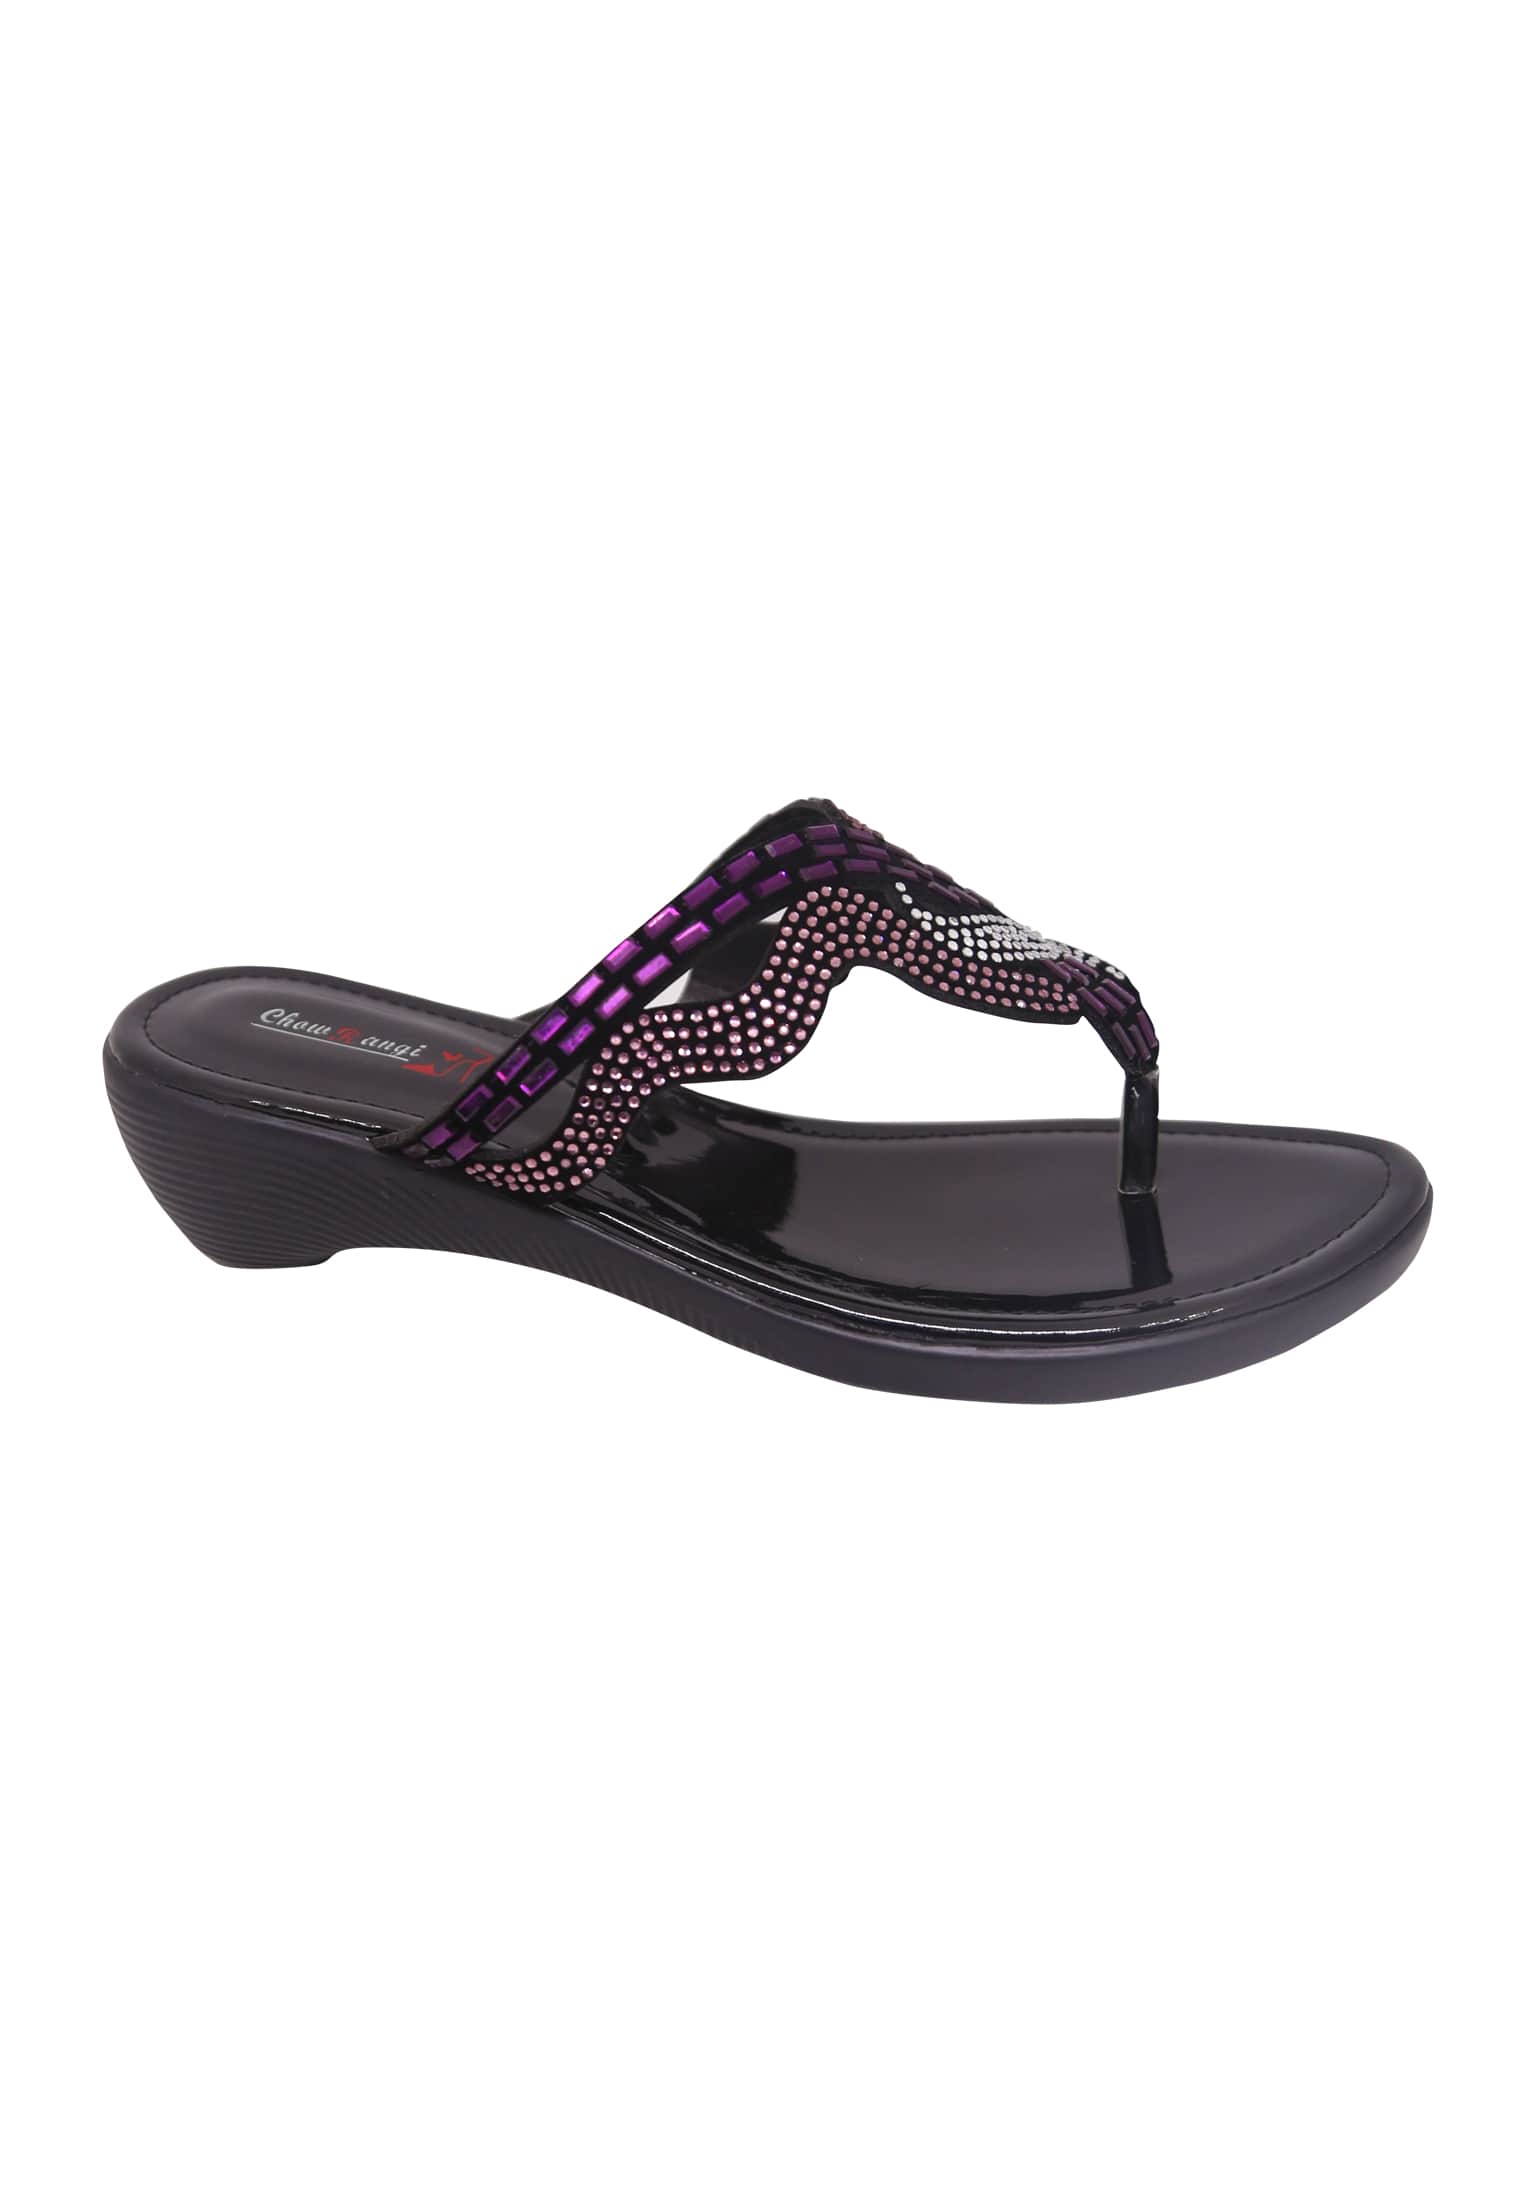 Biye Bazaar | Ladies Special Black and Purple Flat Shoe for Wedding